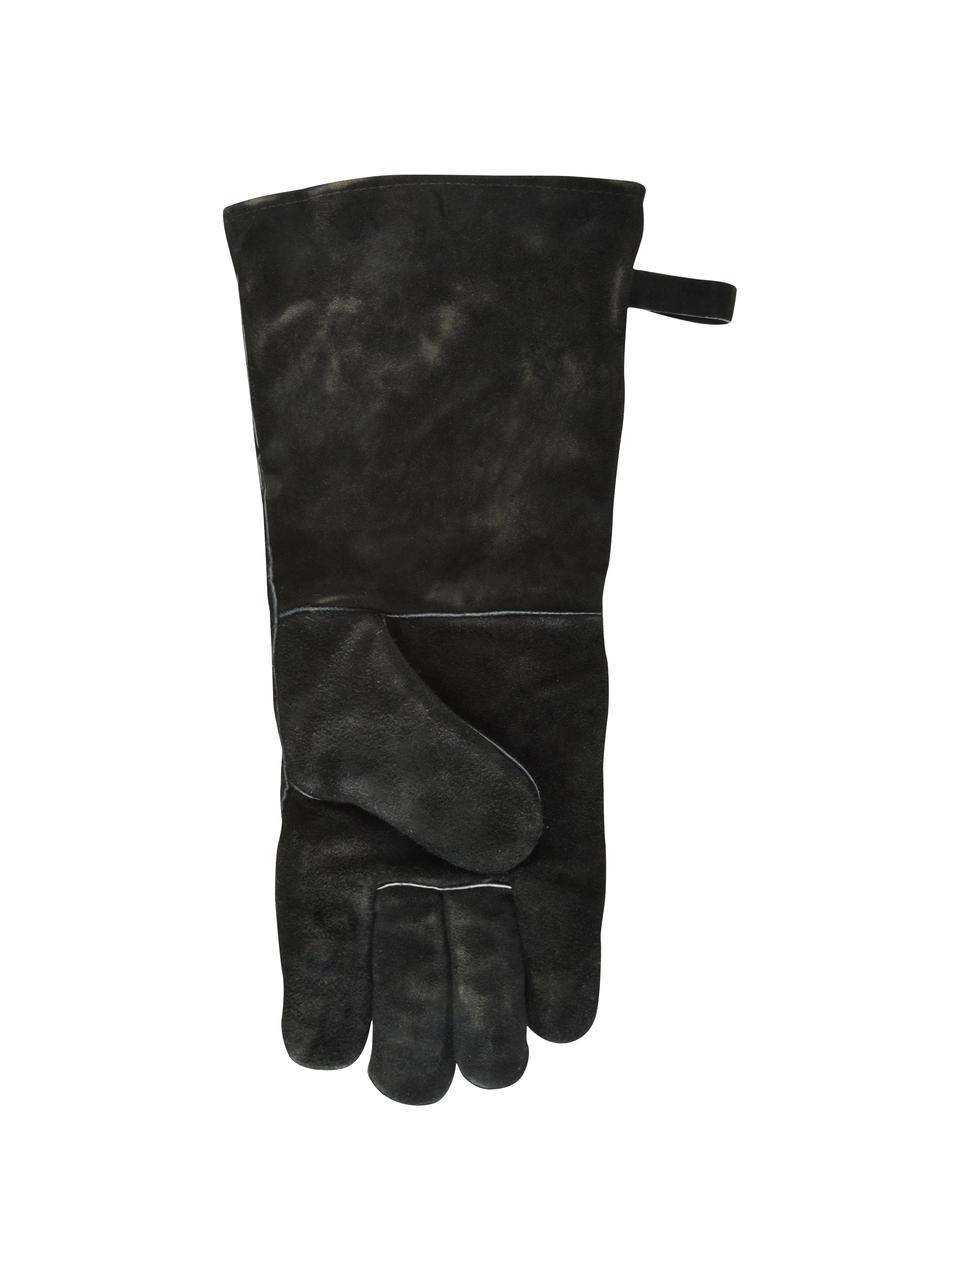 Grill-Handschuh Protect, 65% Rindspaltleder, 25% Polyester, 10% Baumwolle, Schwarz, 19 x 41 cm